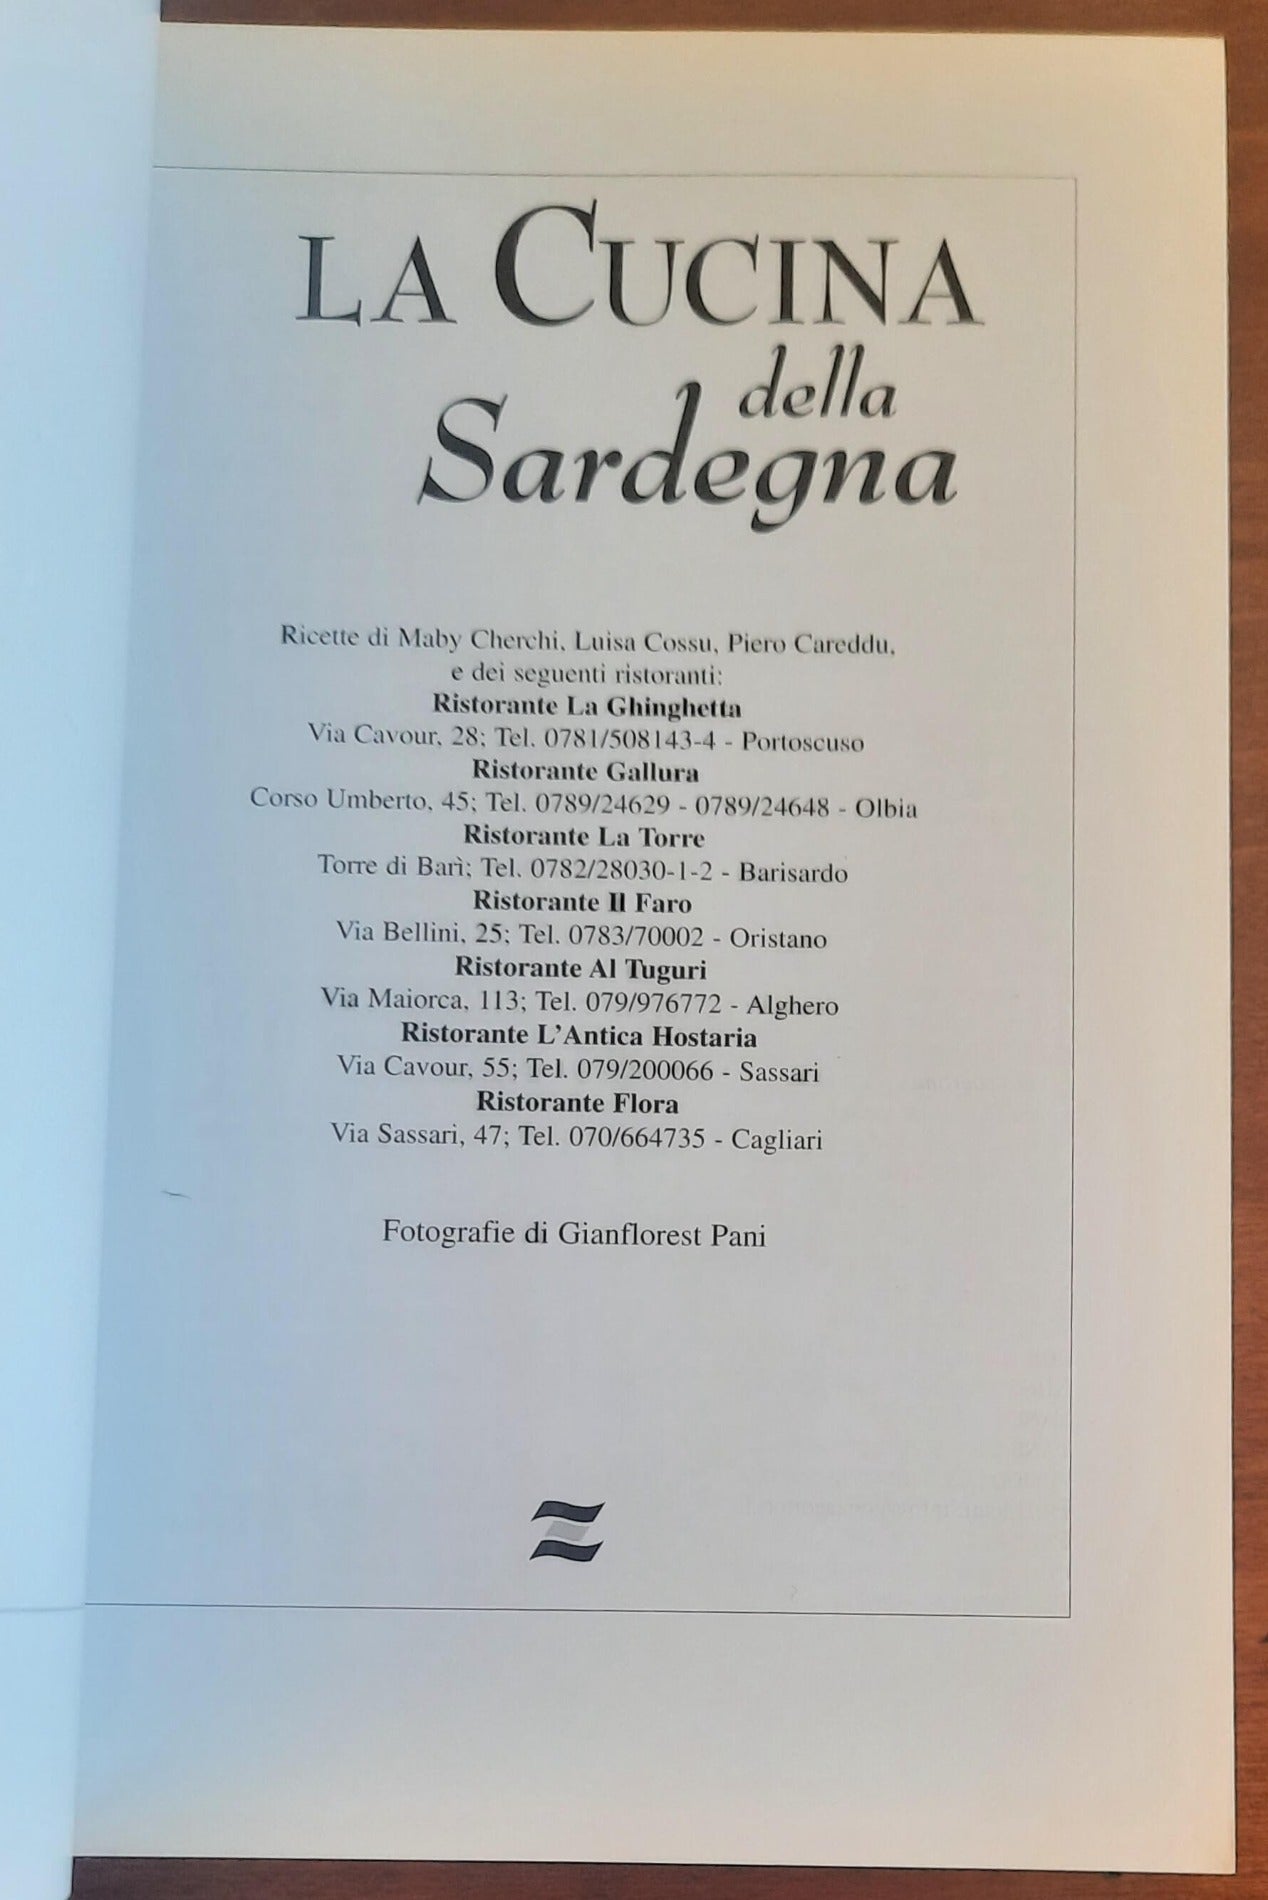 La cucina della Sardegna - Zonza Editori